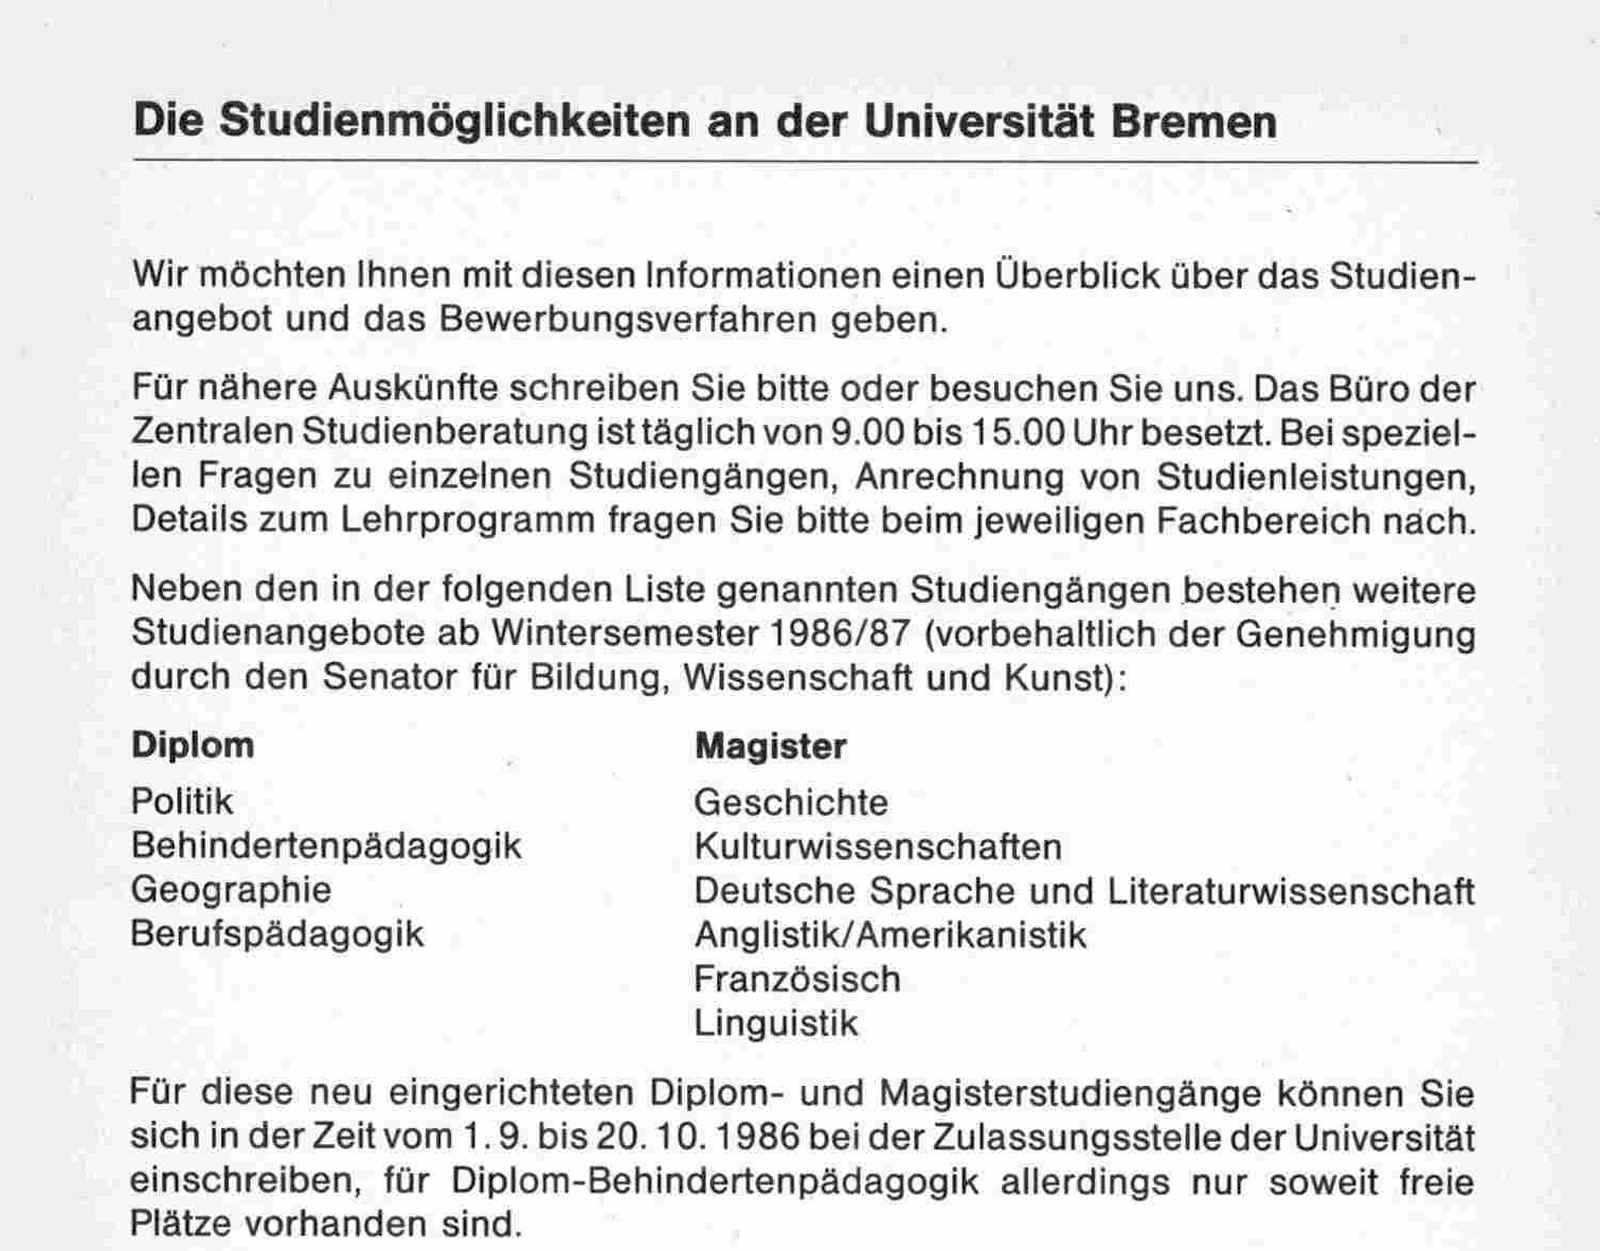 Textauszug zu den Studienmöglichkeiten an der Universität Bremen im Wintersemester 1986/87. Es werden Diplom und Magister Studiengänge aufgeführt.